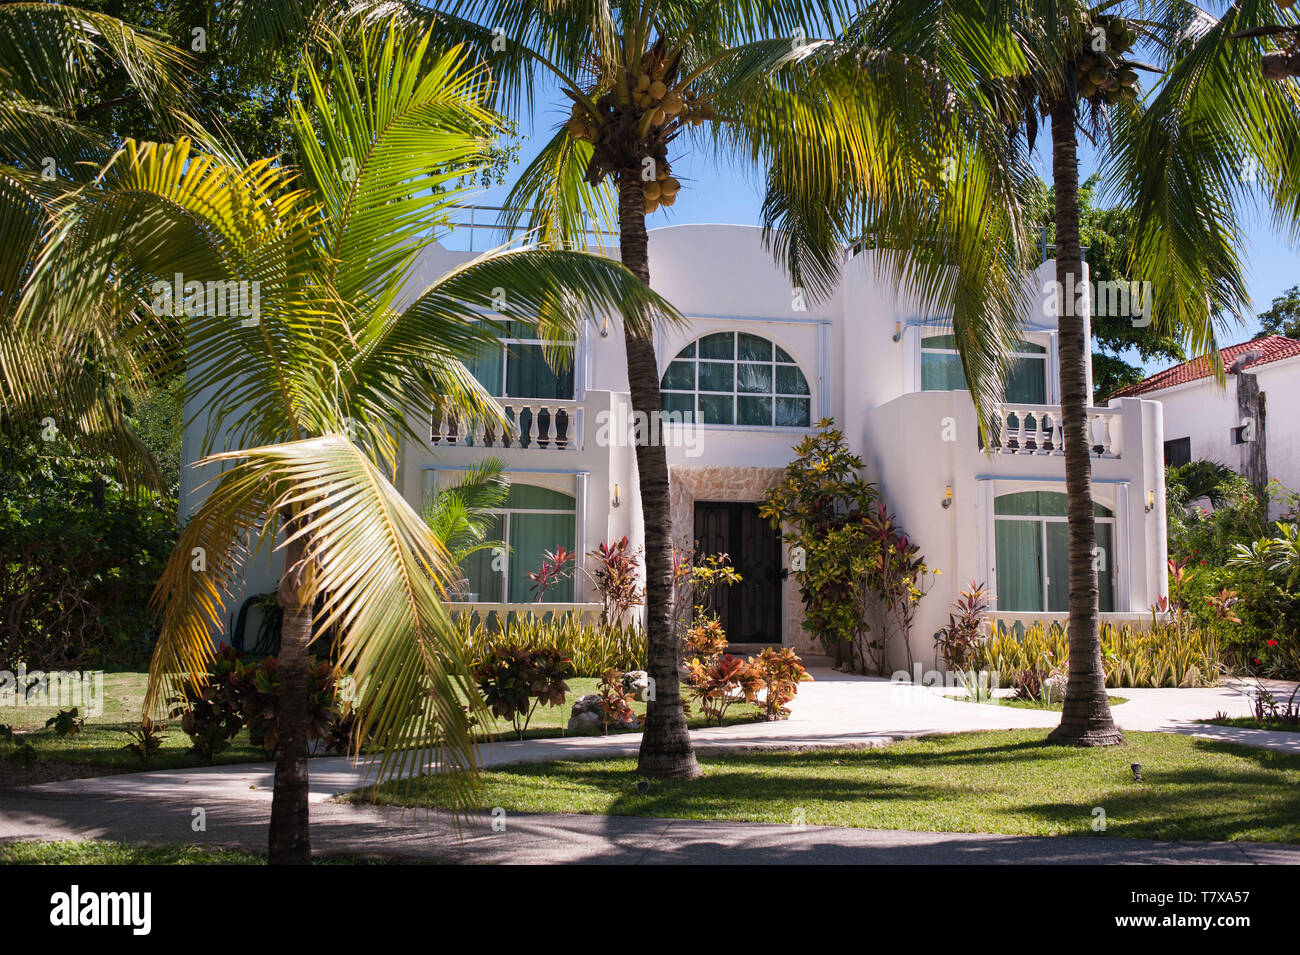 Condominio Playacar. Playa del Carmen, Yucatan. Le Mexique Banque D'Images